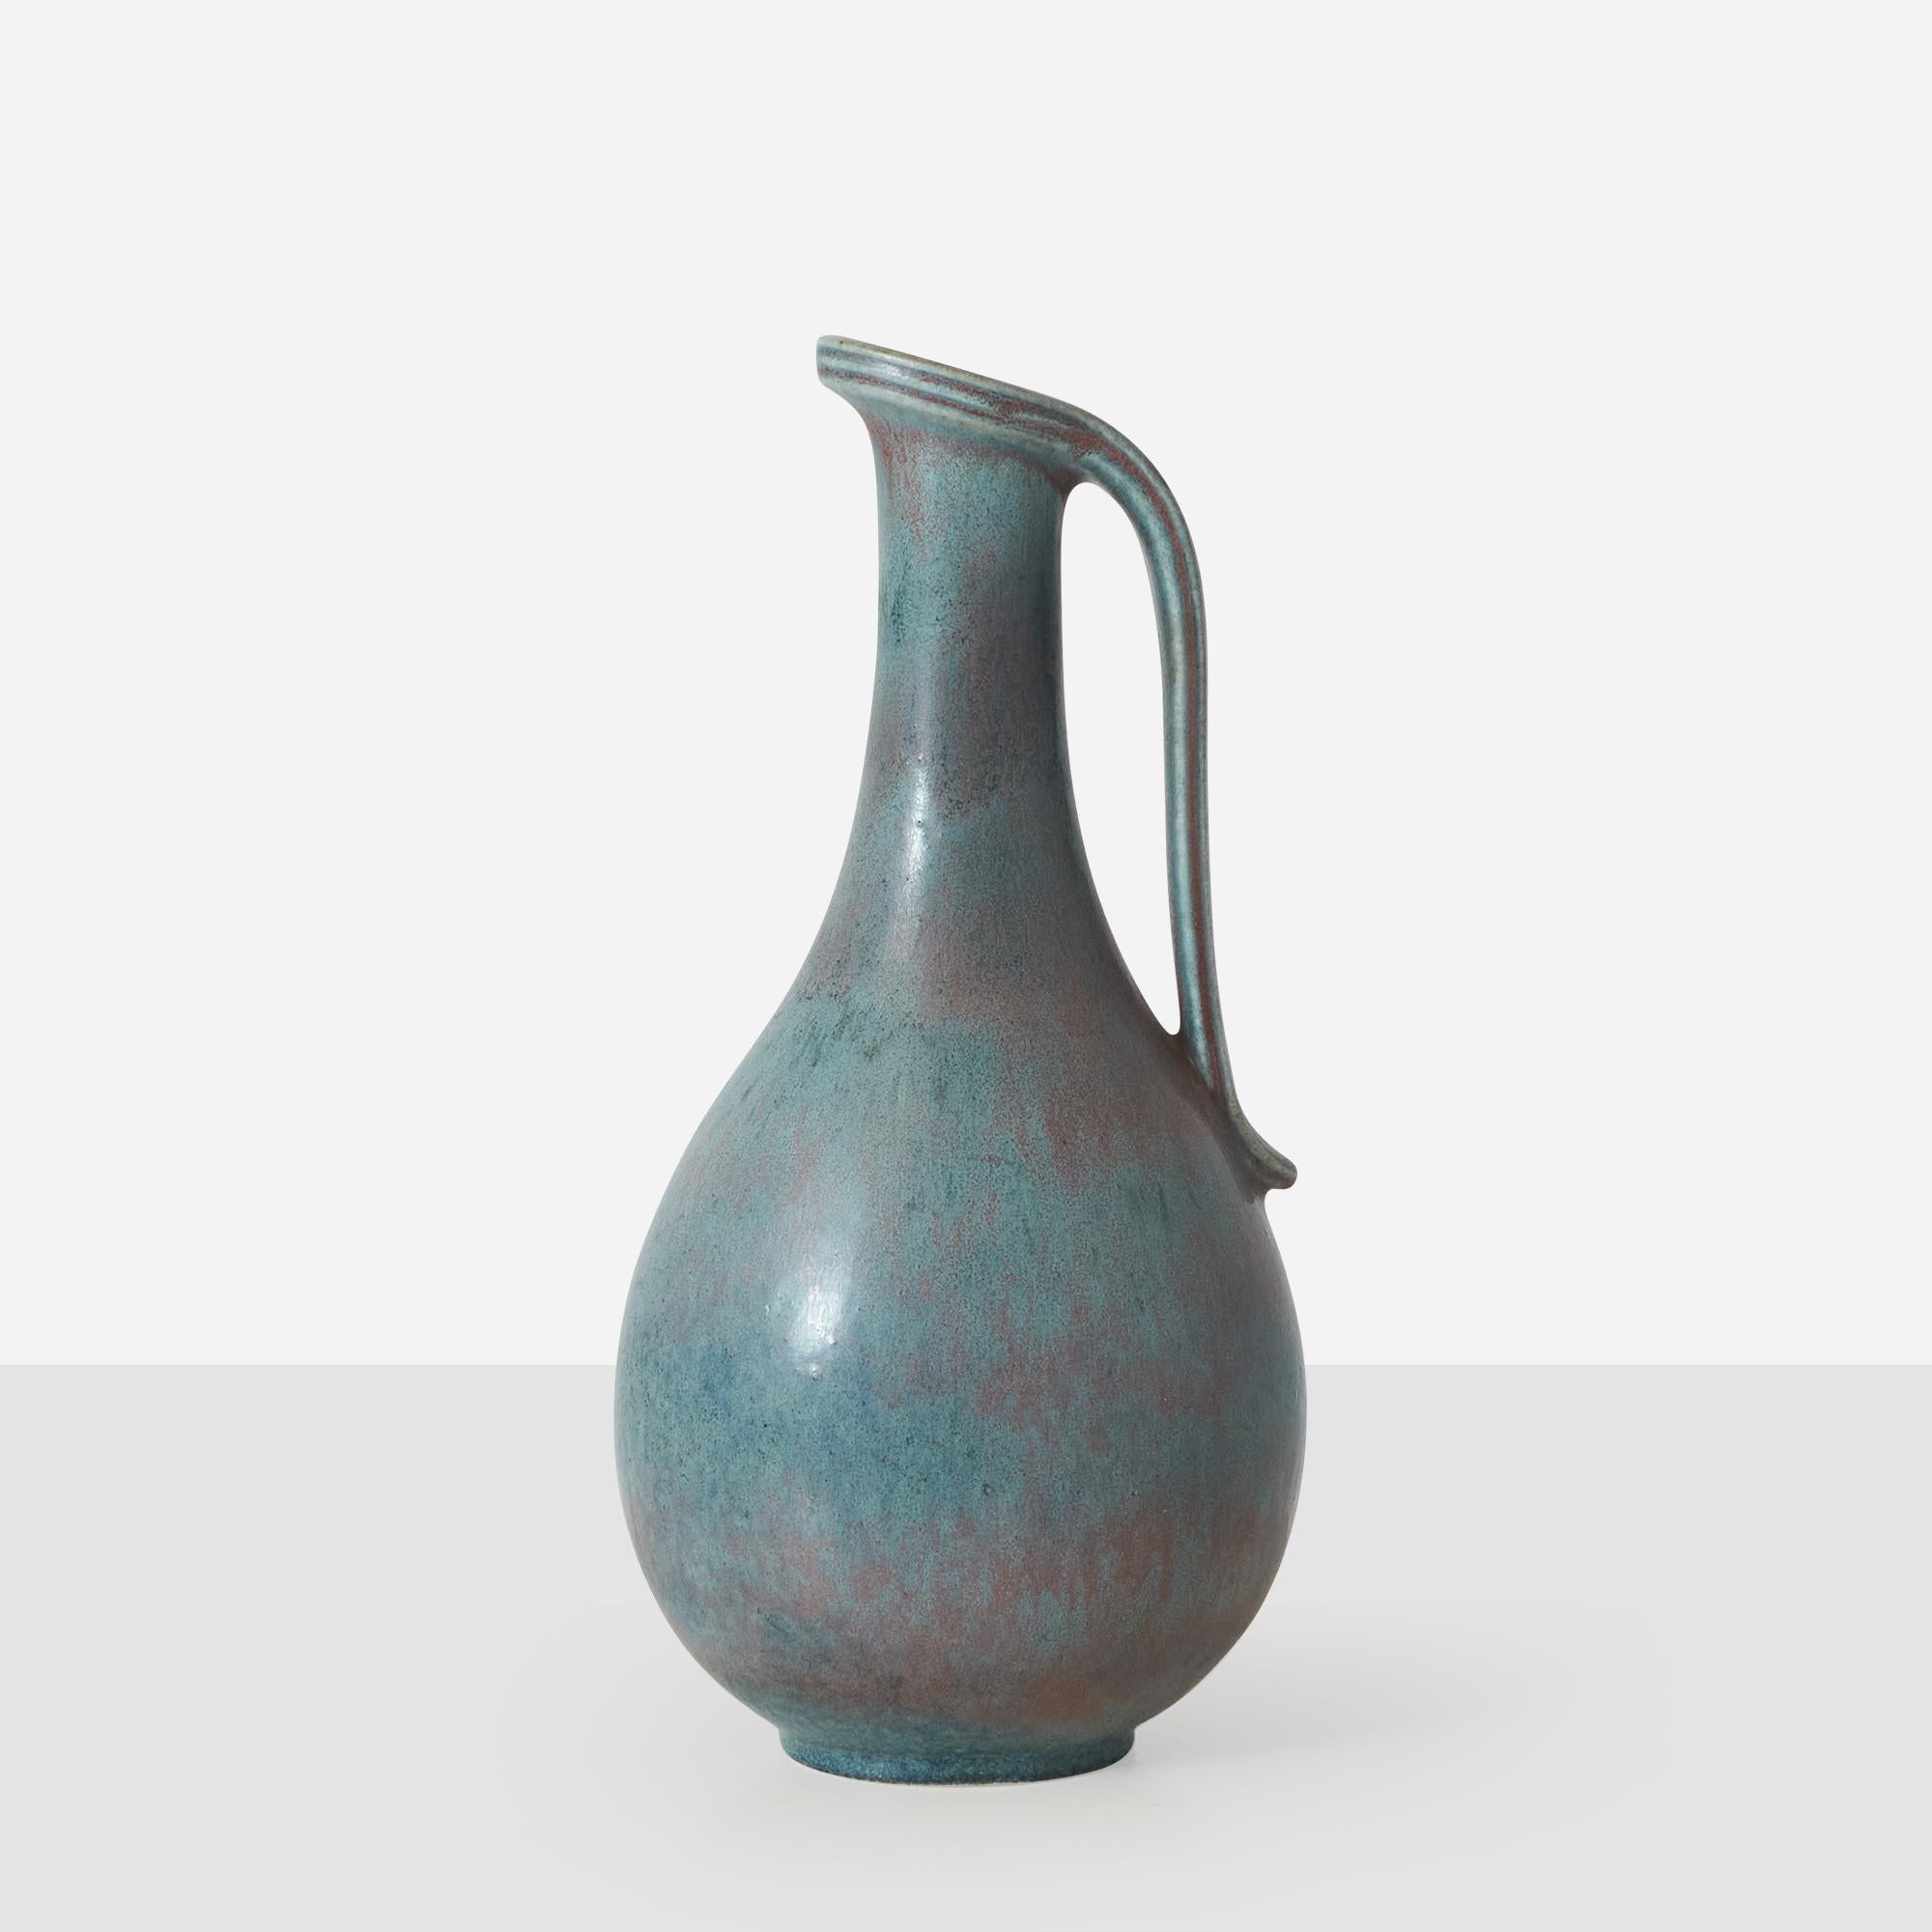 Kleiner Krug oder Vase mit blauer Hasenfellglasur von Gunnar Nylund für Rorstrand. Auf der Unterseite sind sowohl der Urheber als auch die Herstellermarke eingeprägt. 